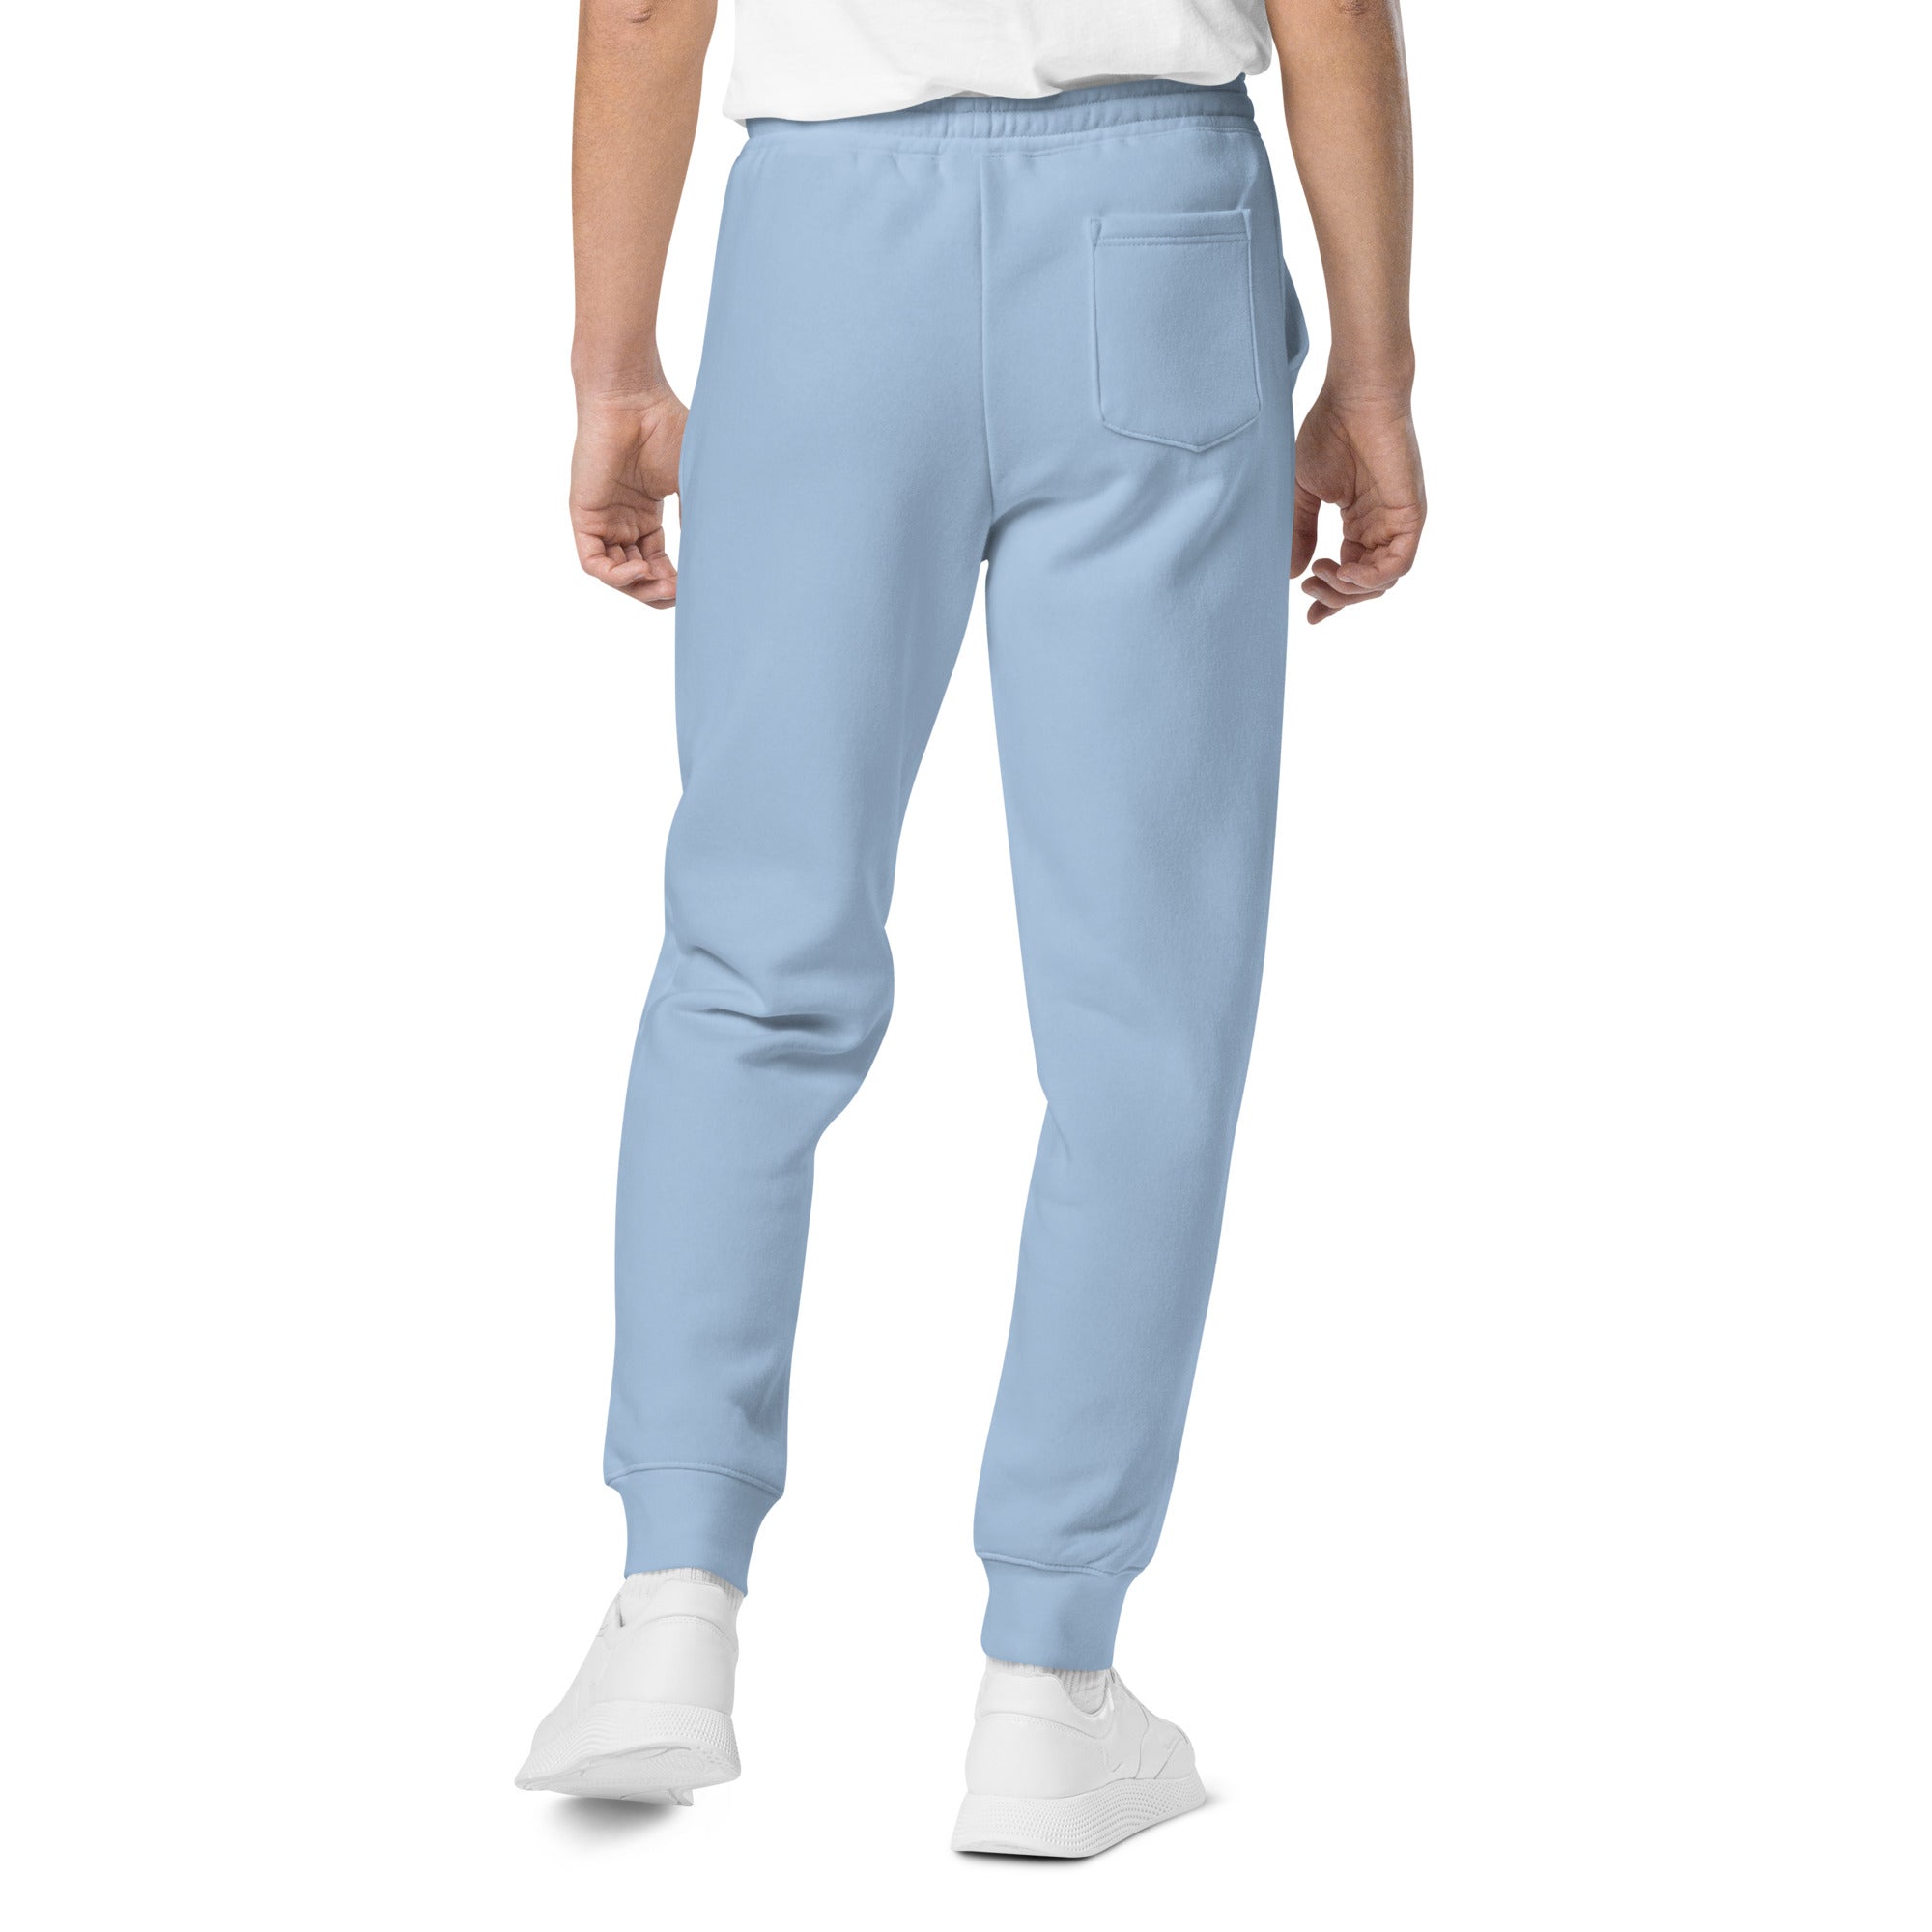 Pantalones de chándal unisex teñidos con pigmentos